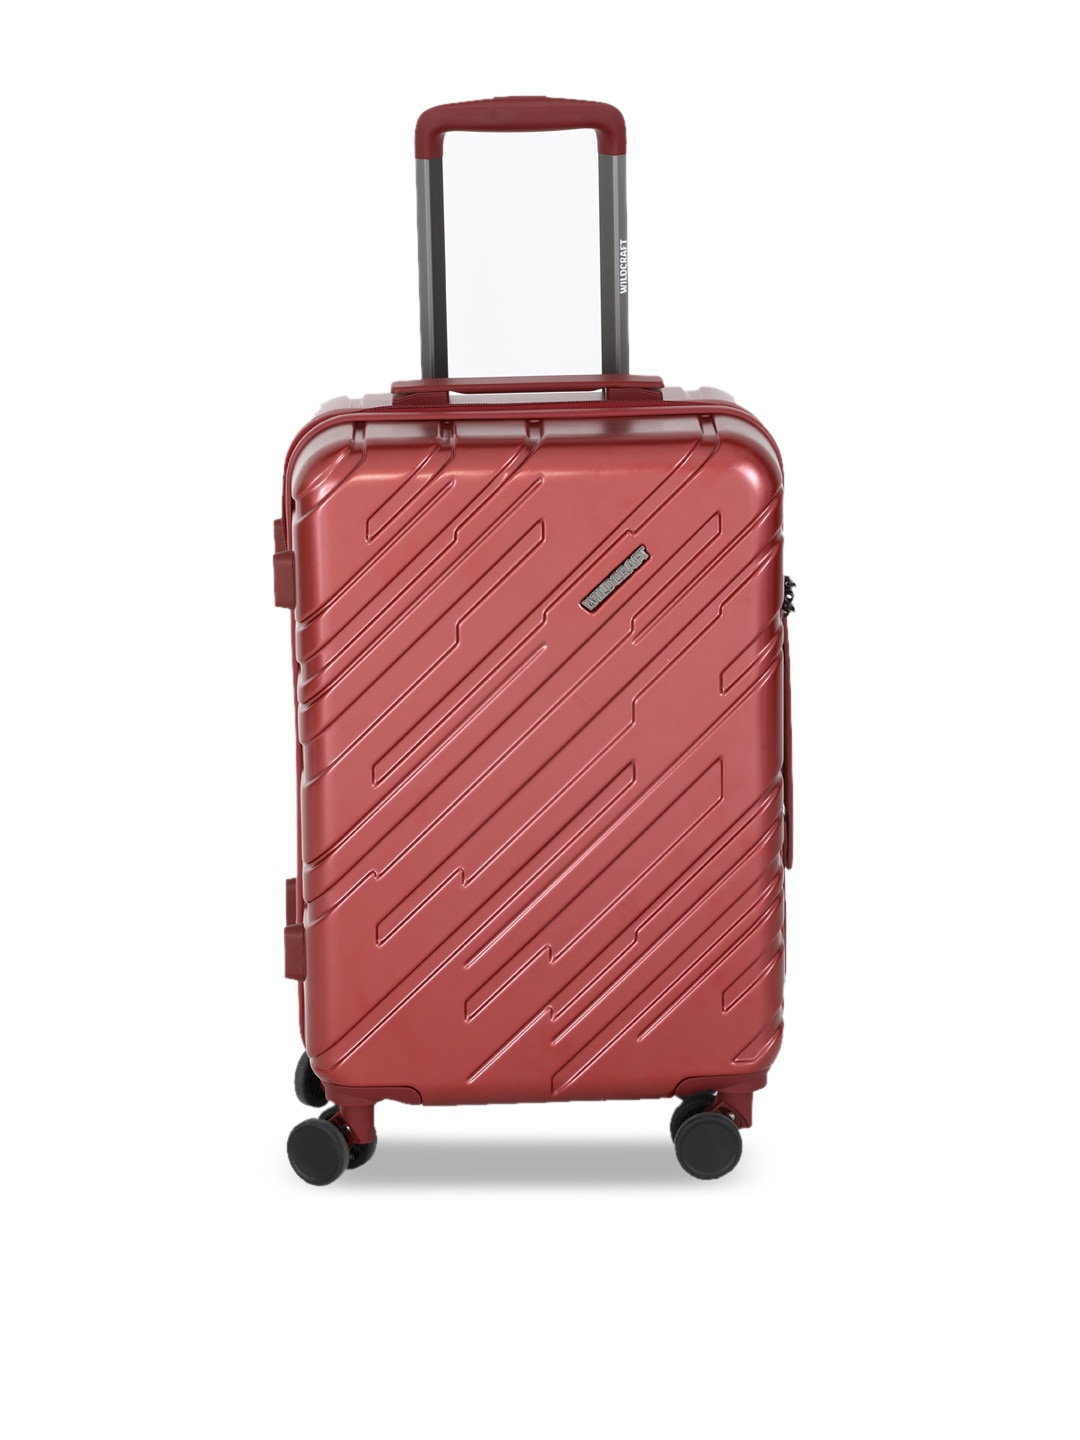 Wildcraft Red Textutured Medium Suitcase Price in India